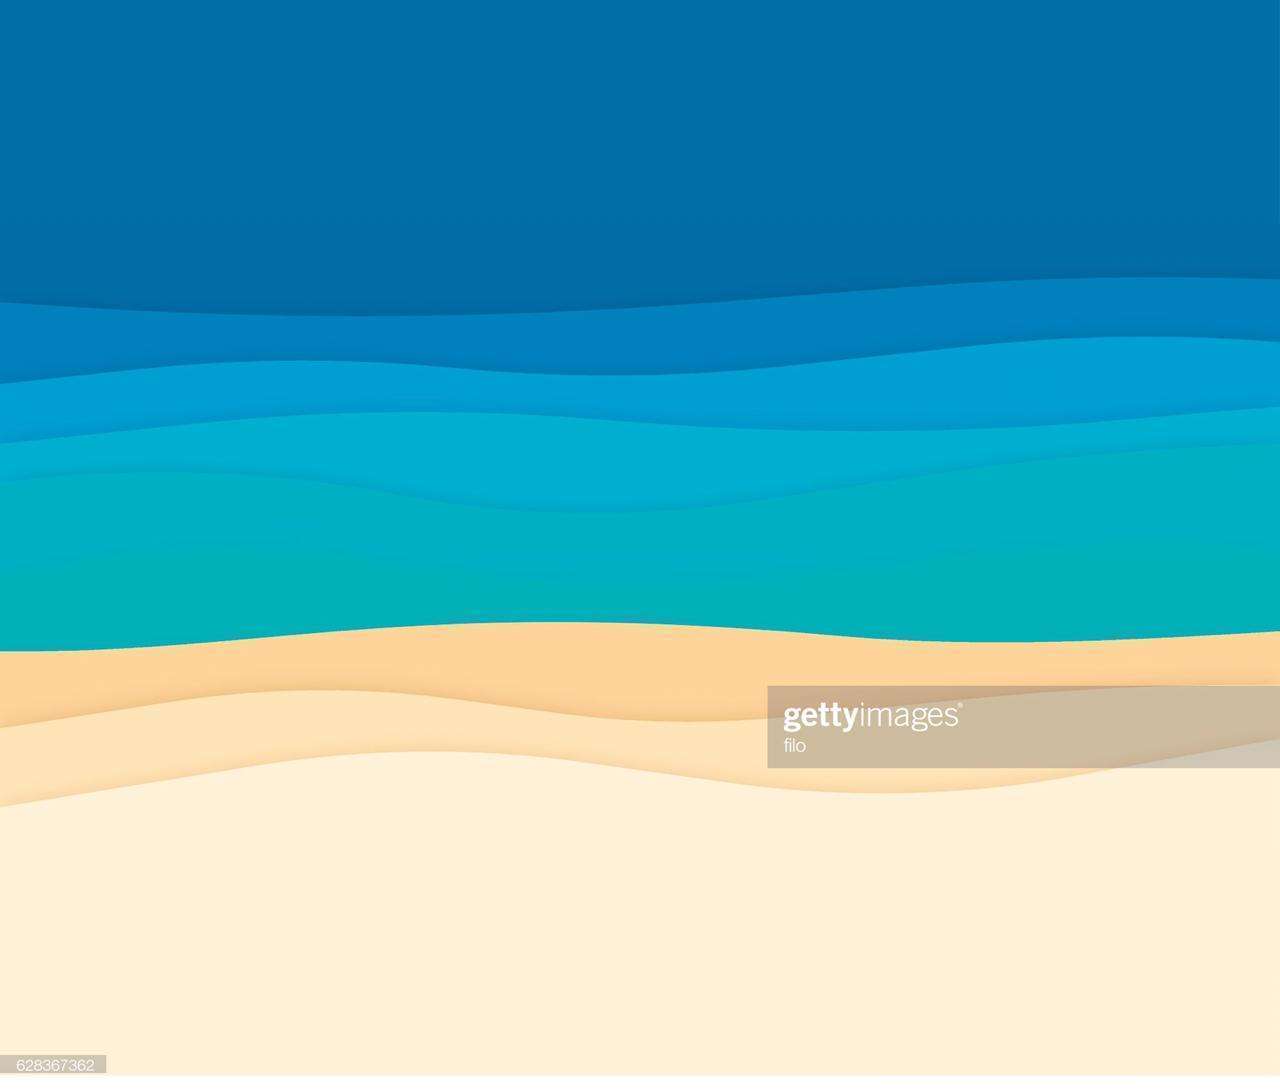 Foto: https://www.gettyimages.com.br/detail/ilustração/ocean-abstract-background-waves-ilustração-royalty-free/628367362 - Sol, praia e cerveja